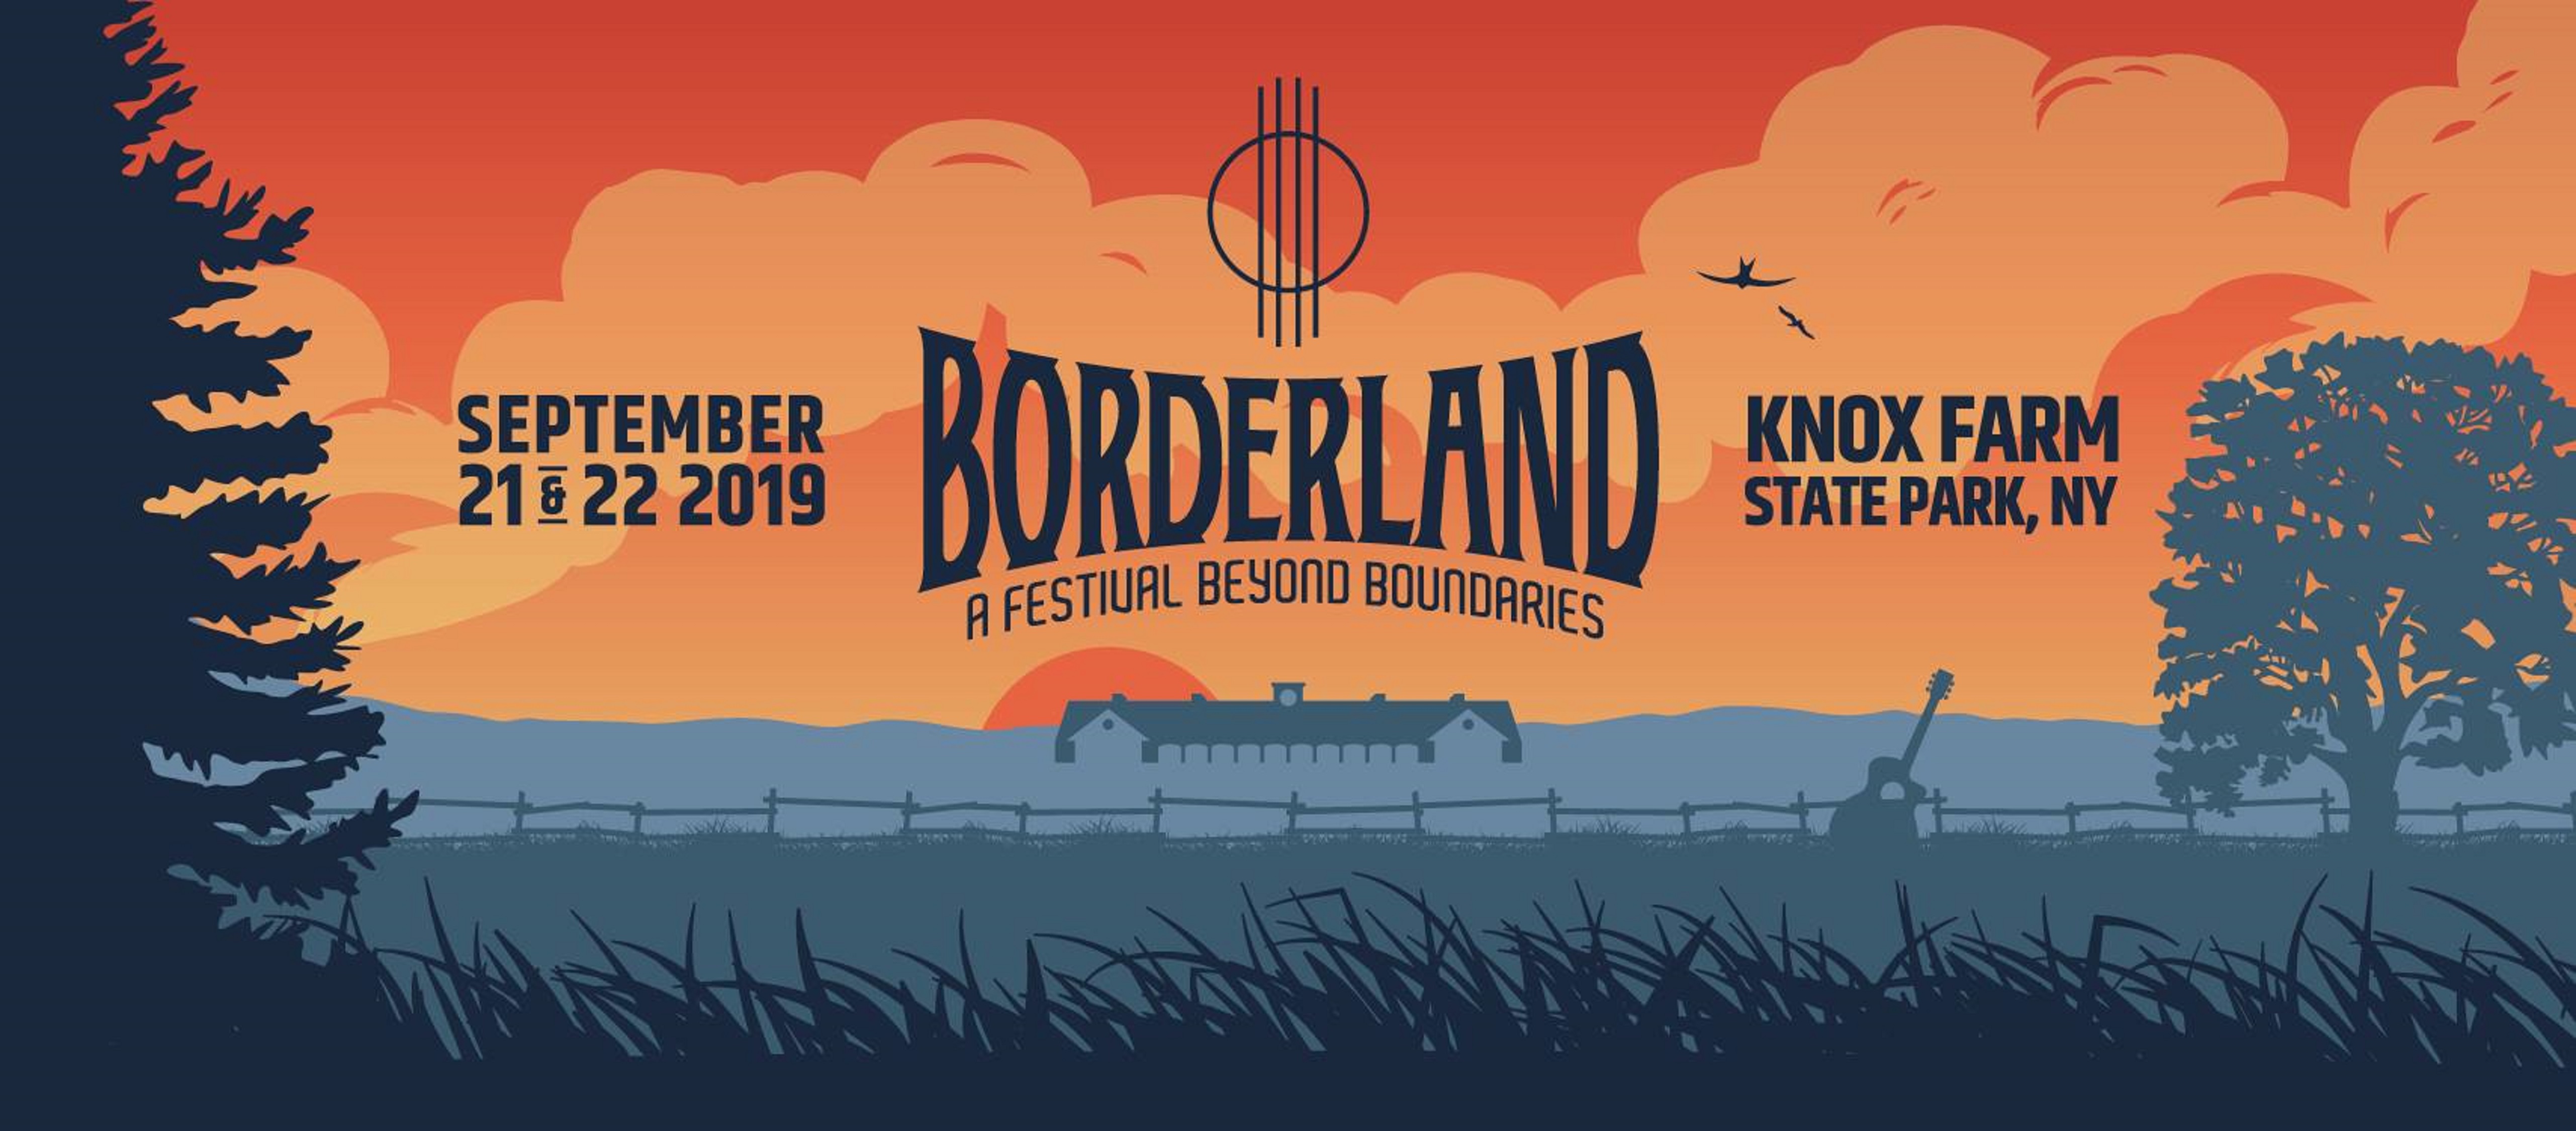 Borderland Festival Announces 2019 Lineup